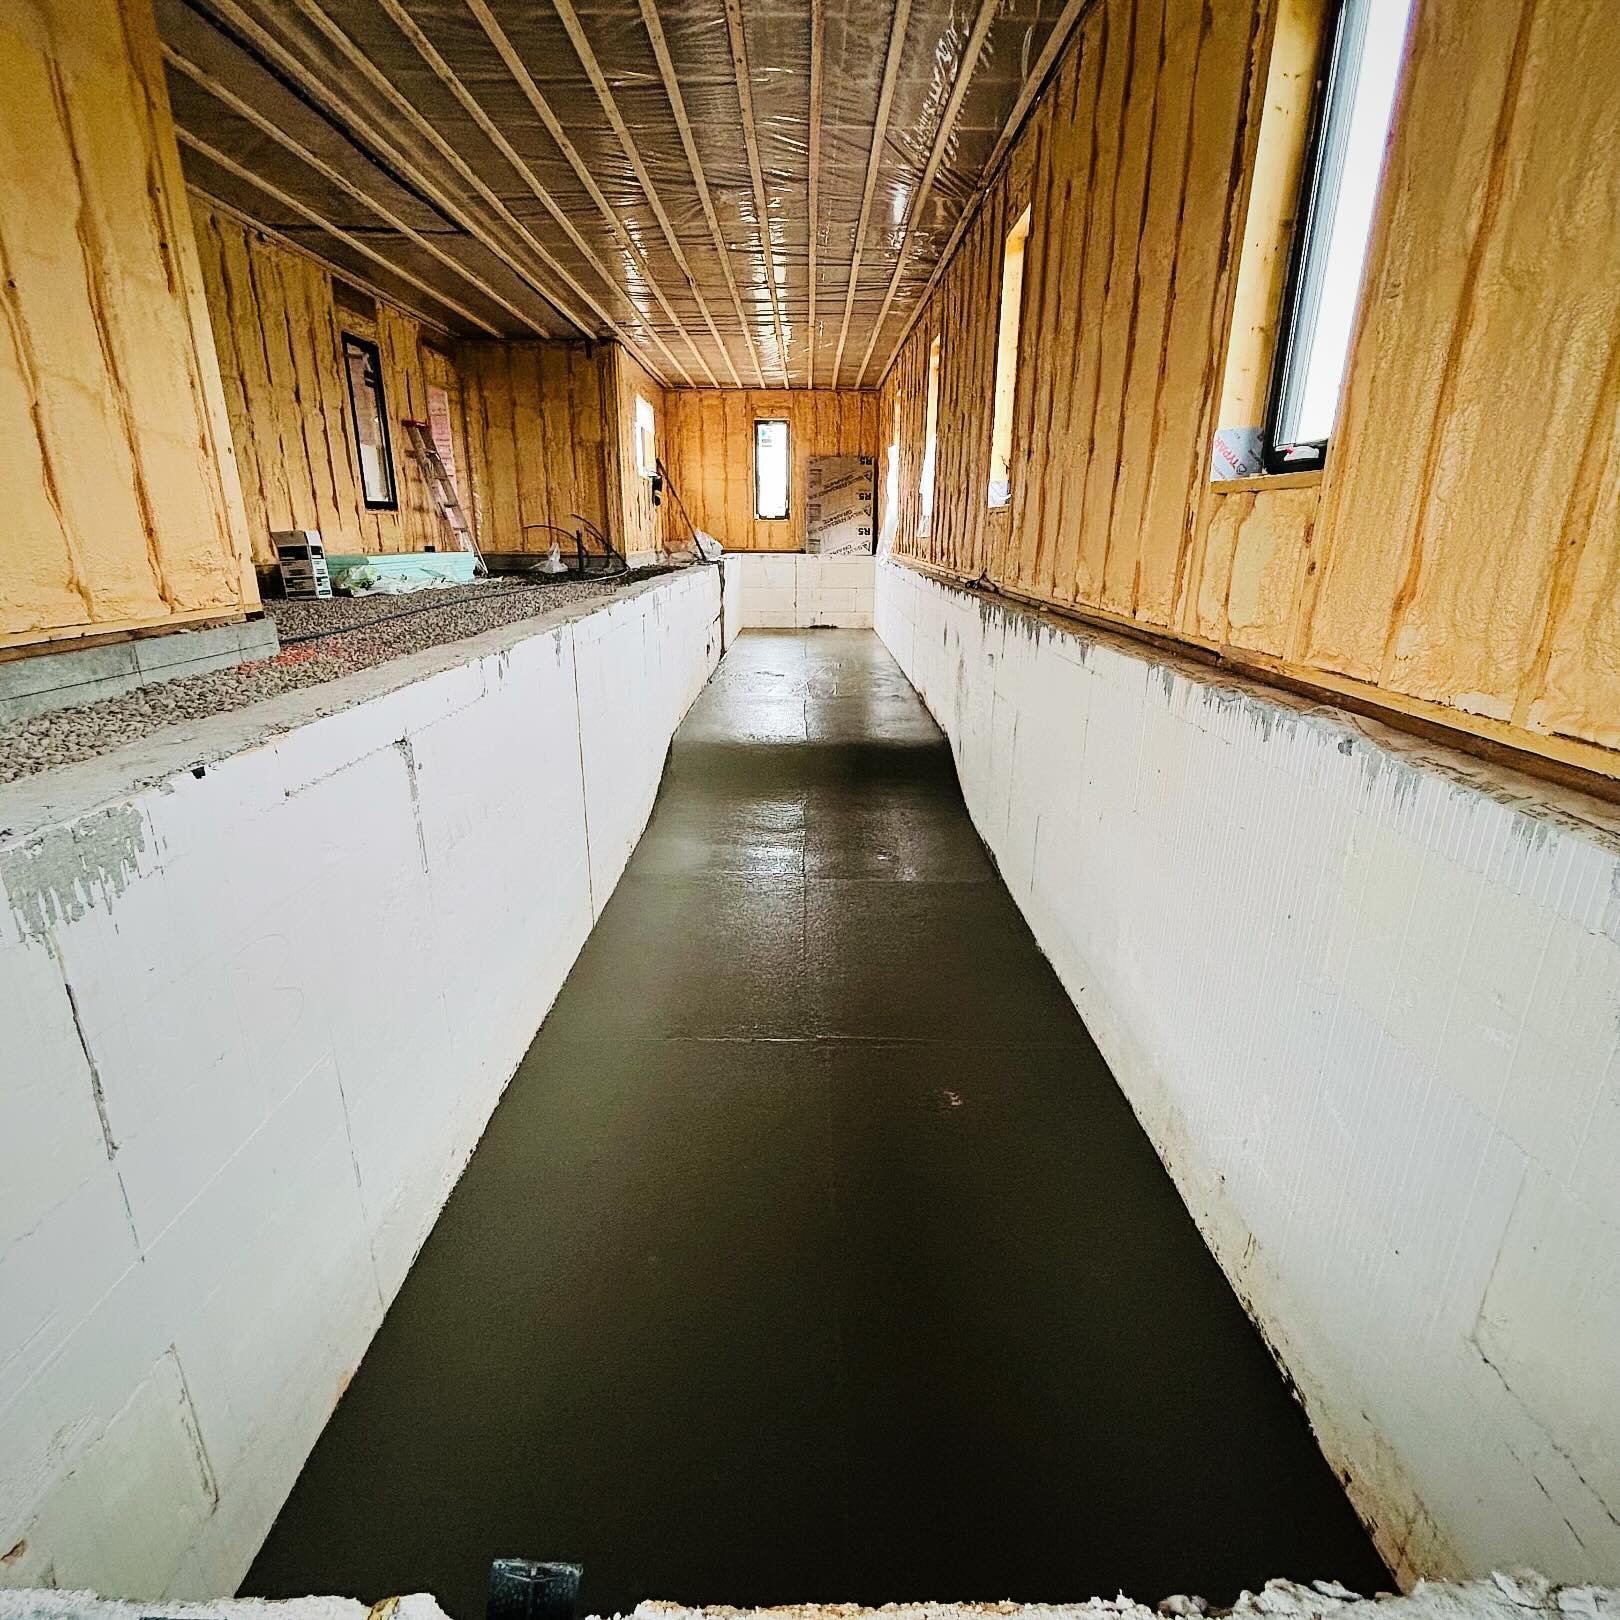 Indoor olympic pool lane💧
Rough finish required. 
#ottawaconstruction #ottawaconcrete #ottawa